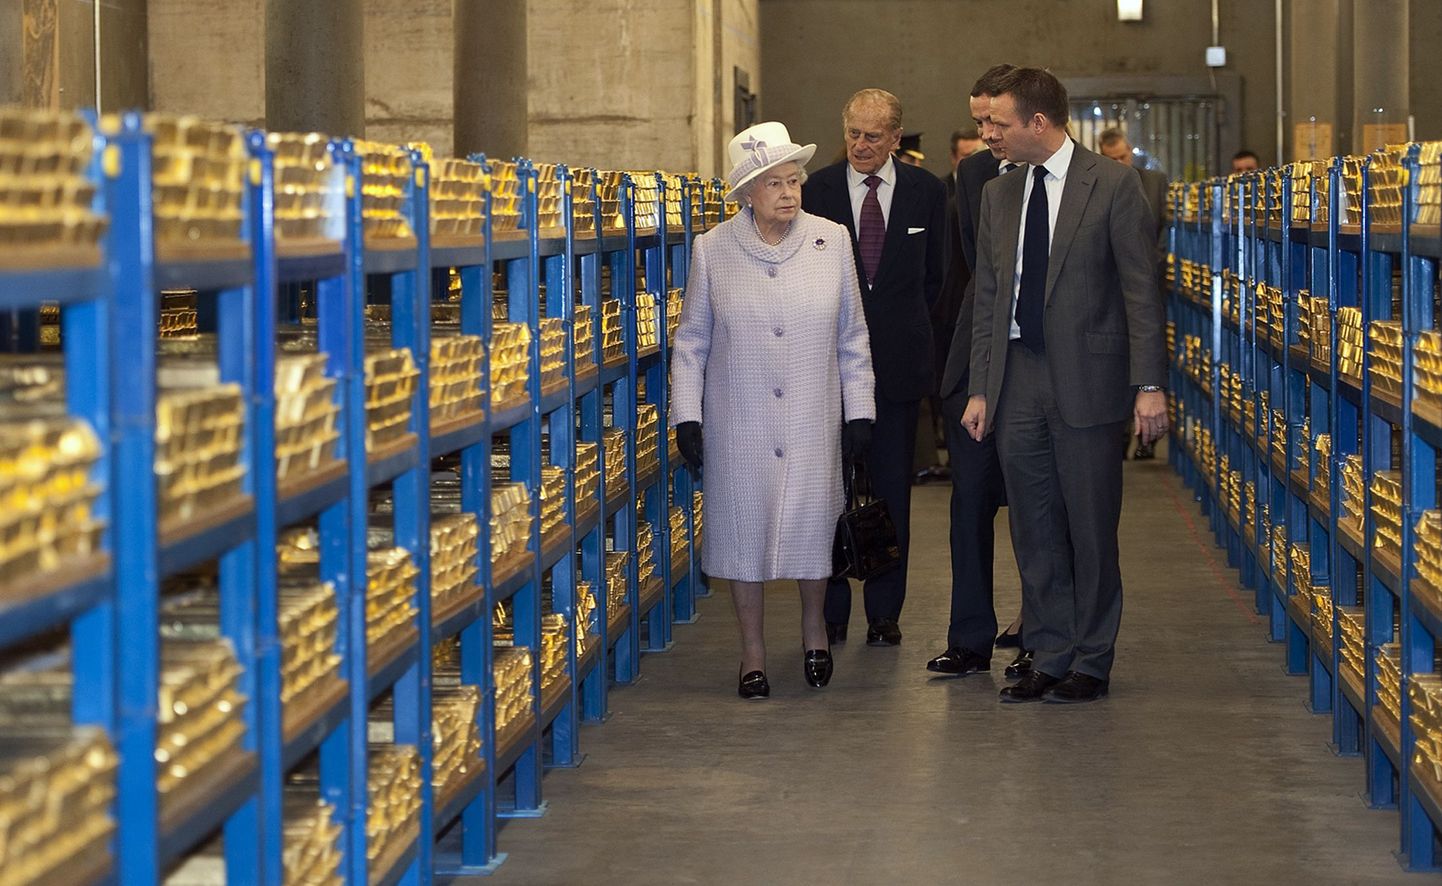 Ühendkuningriigi valitseja Elizabeth koos abikaasa prints Philipiga Inglise kuningliku panga kullahoidlas. Samas hoidlas hoiab kulda ka Leedu keskpank.